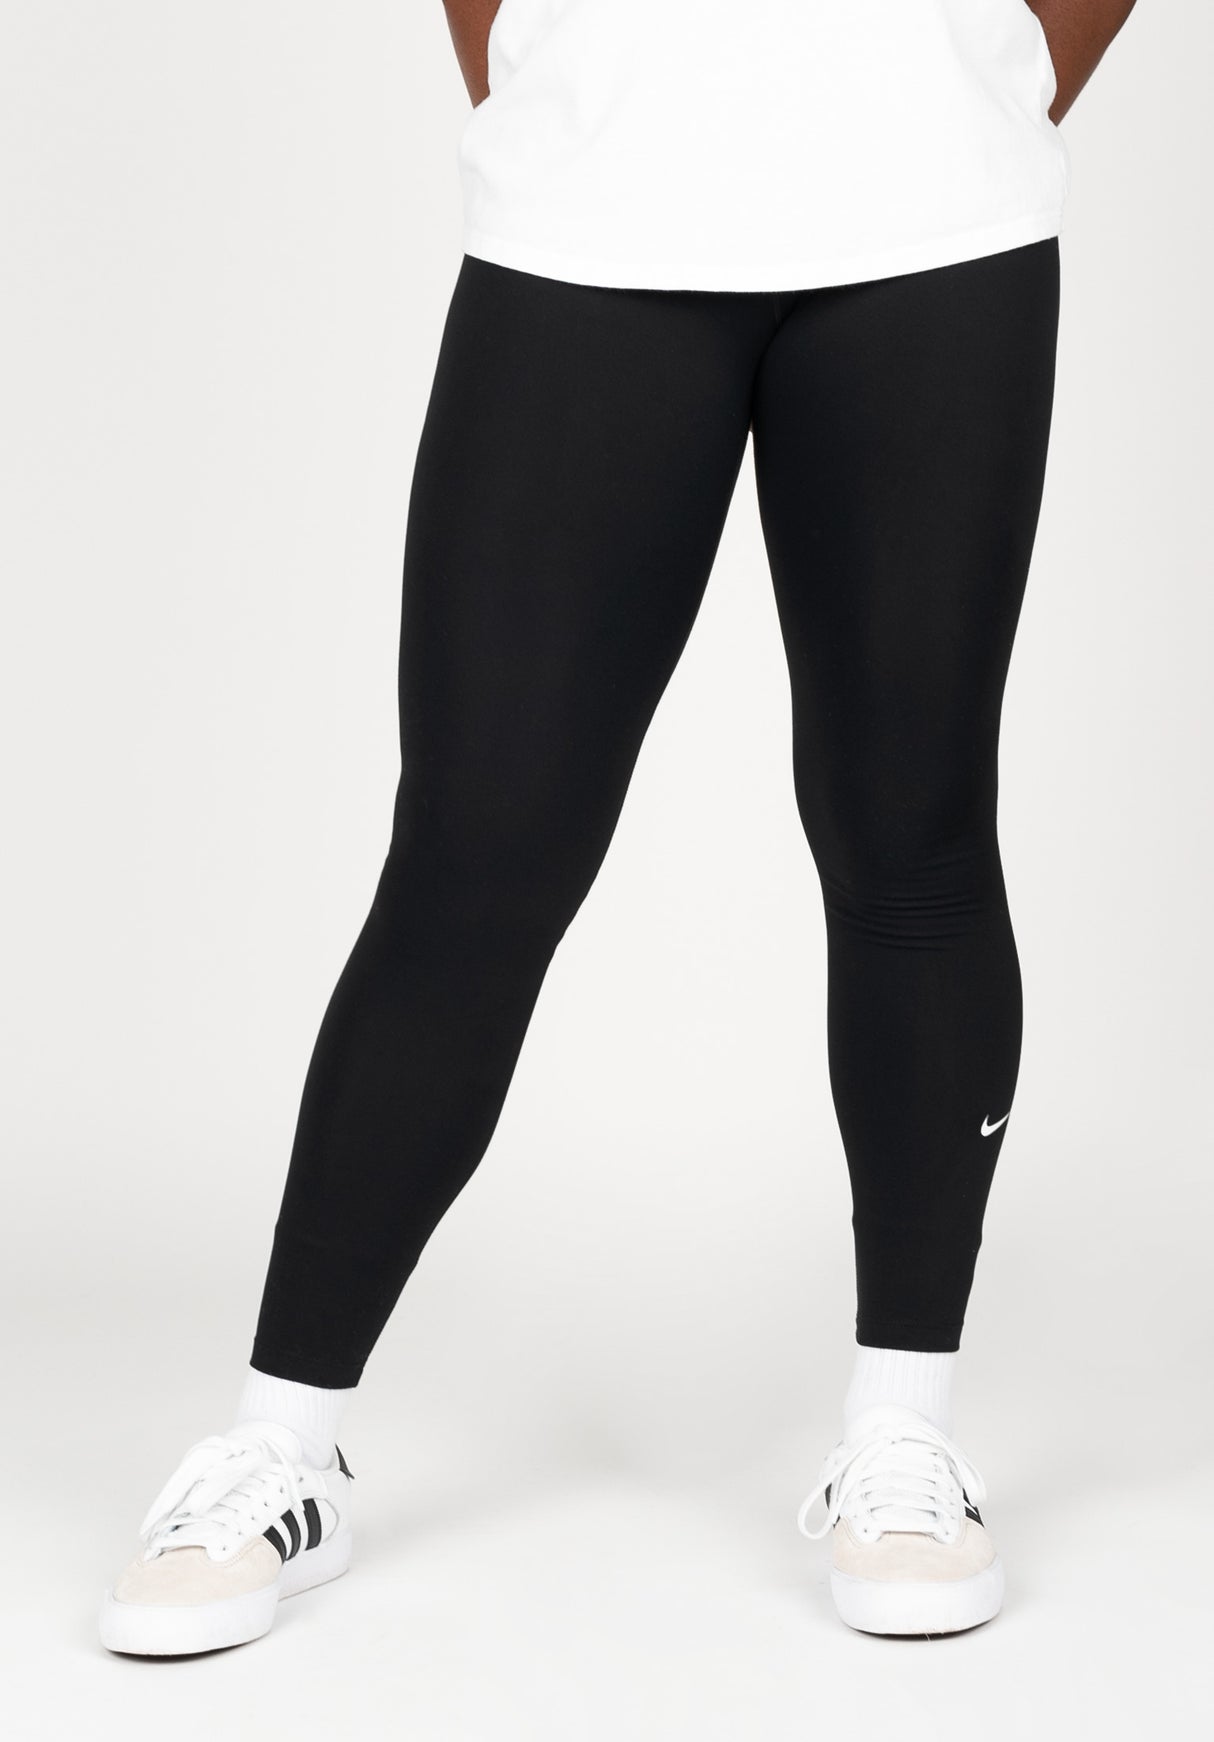 Nike One Nike SB Leggings in black-white for Women – TITUS